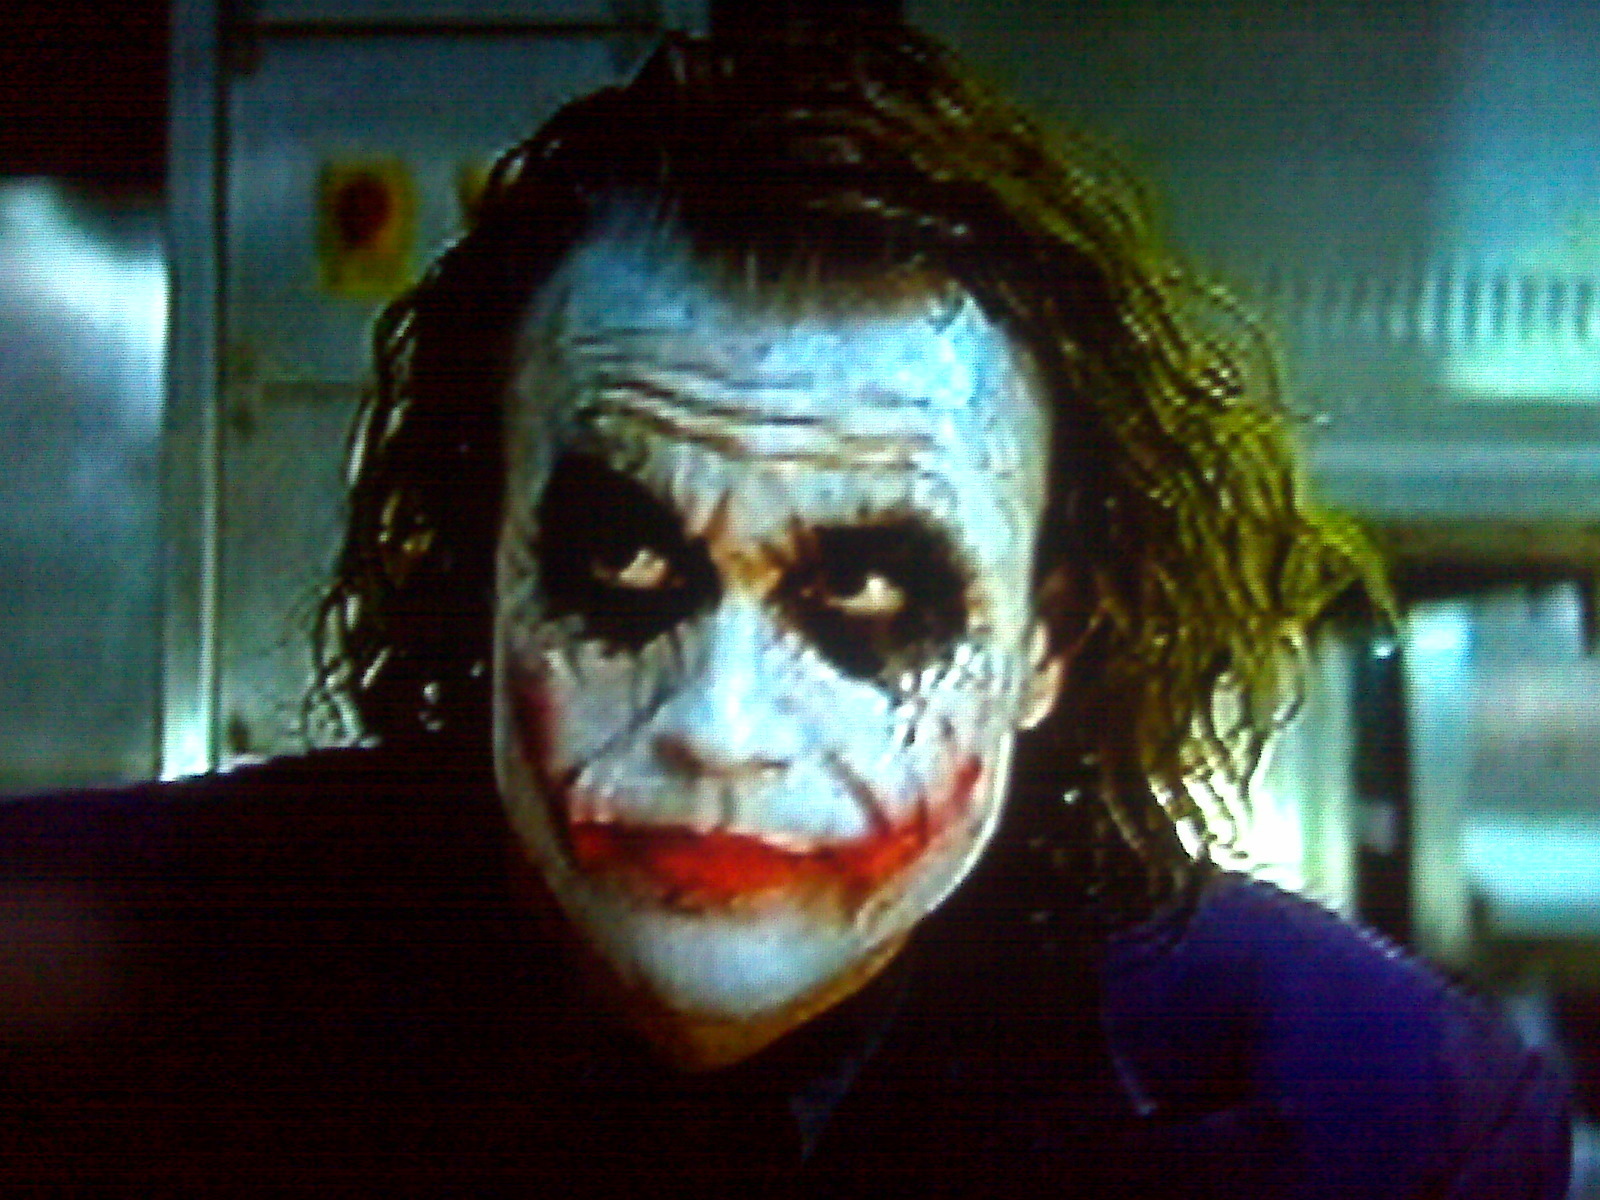 joker - The Joker Photo (3137971) - Fanpop